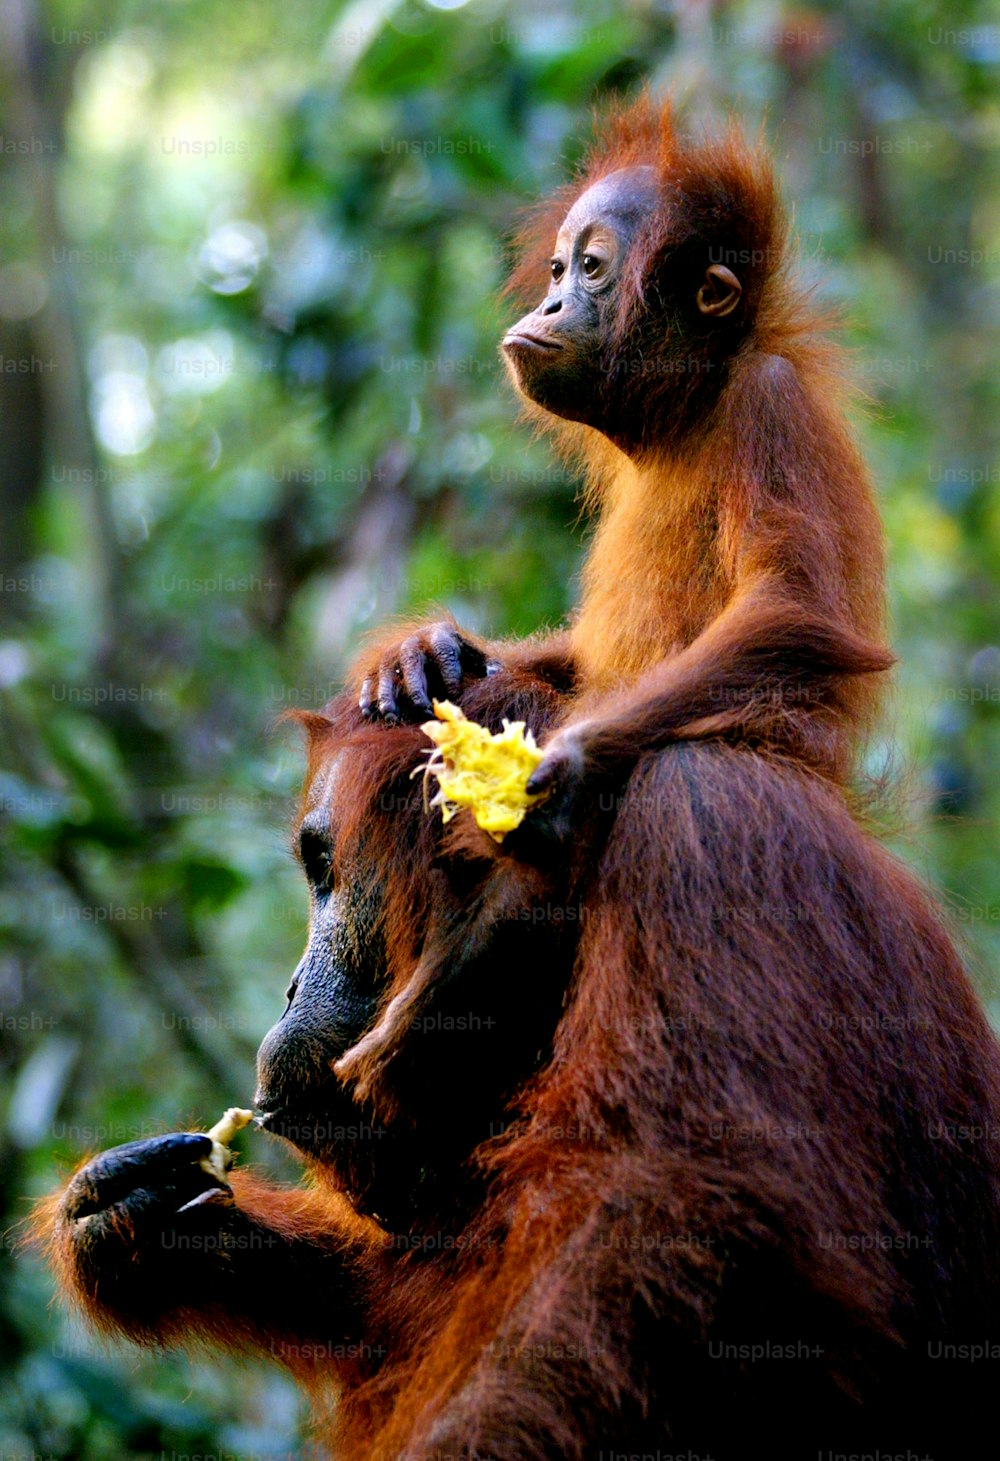 Un animal marrón y negro sosteniendo una flor amarilla